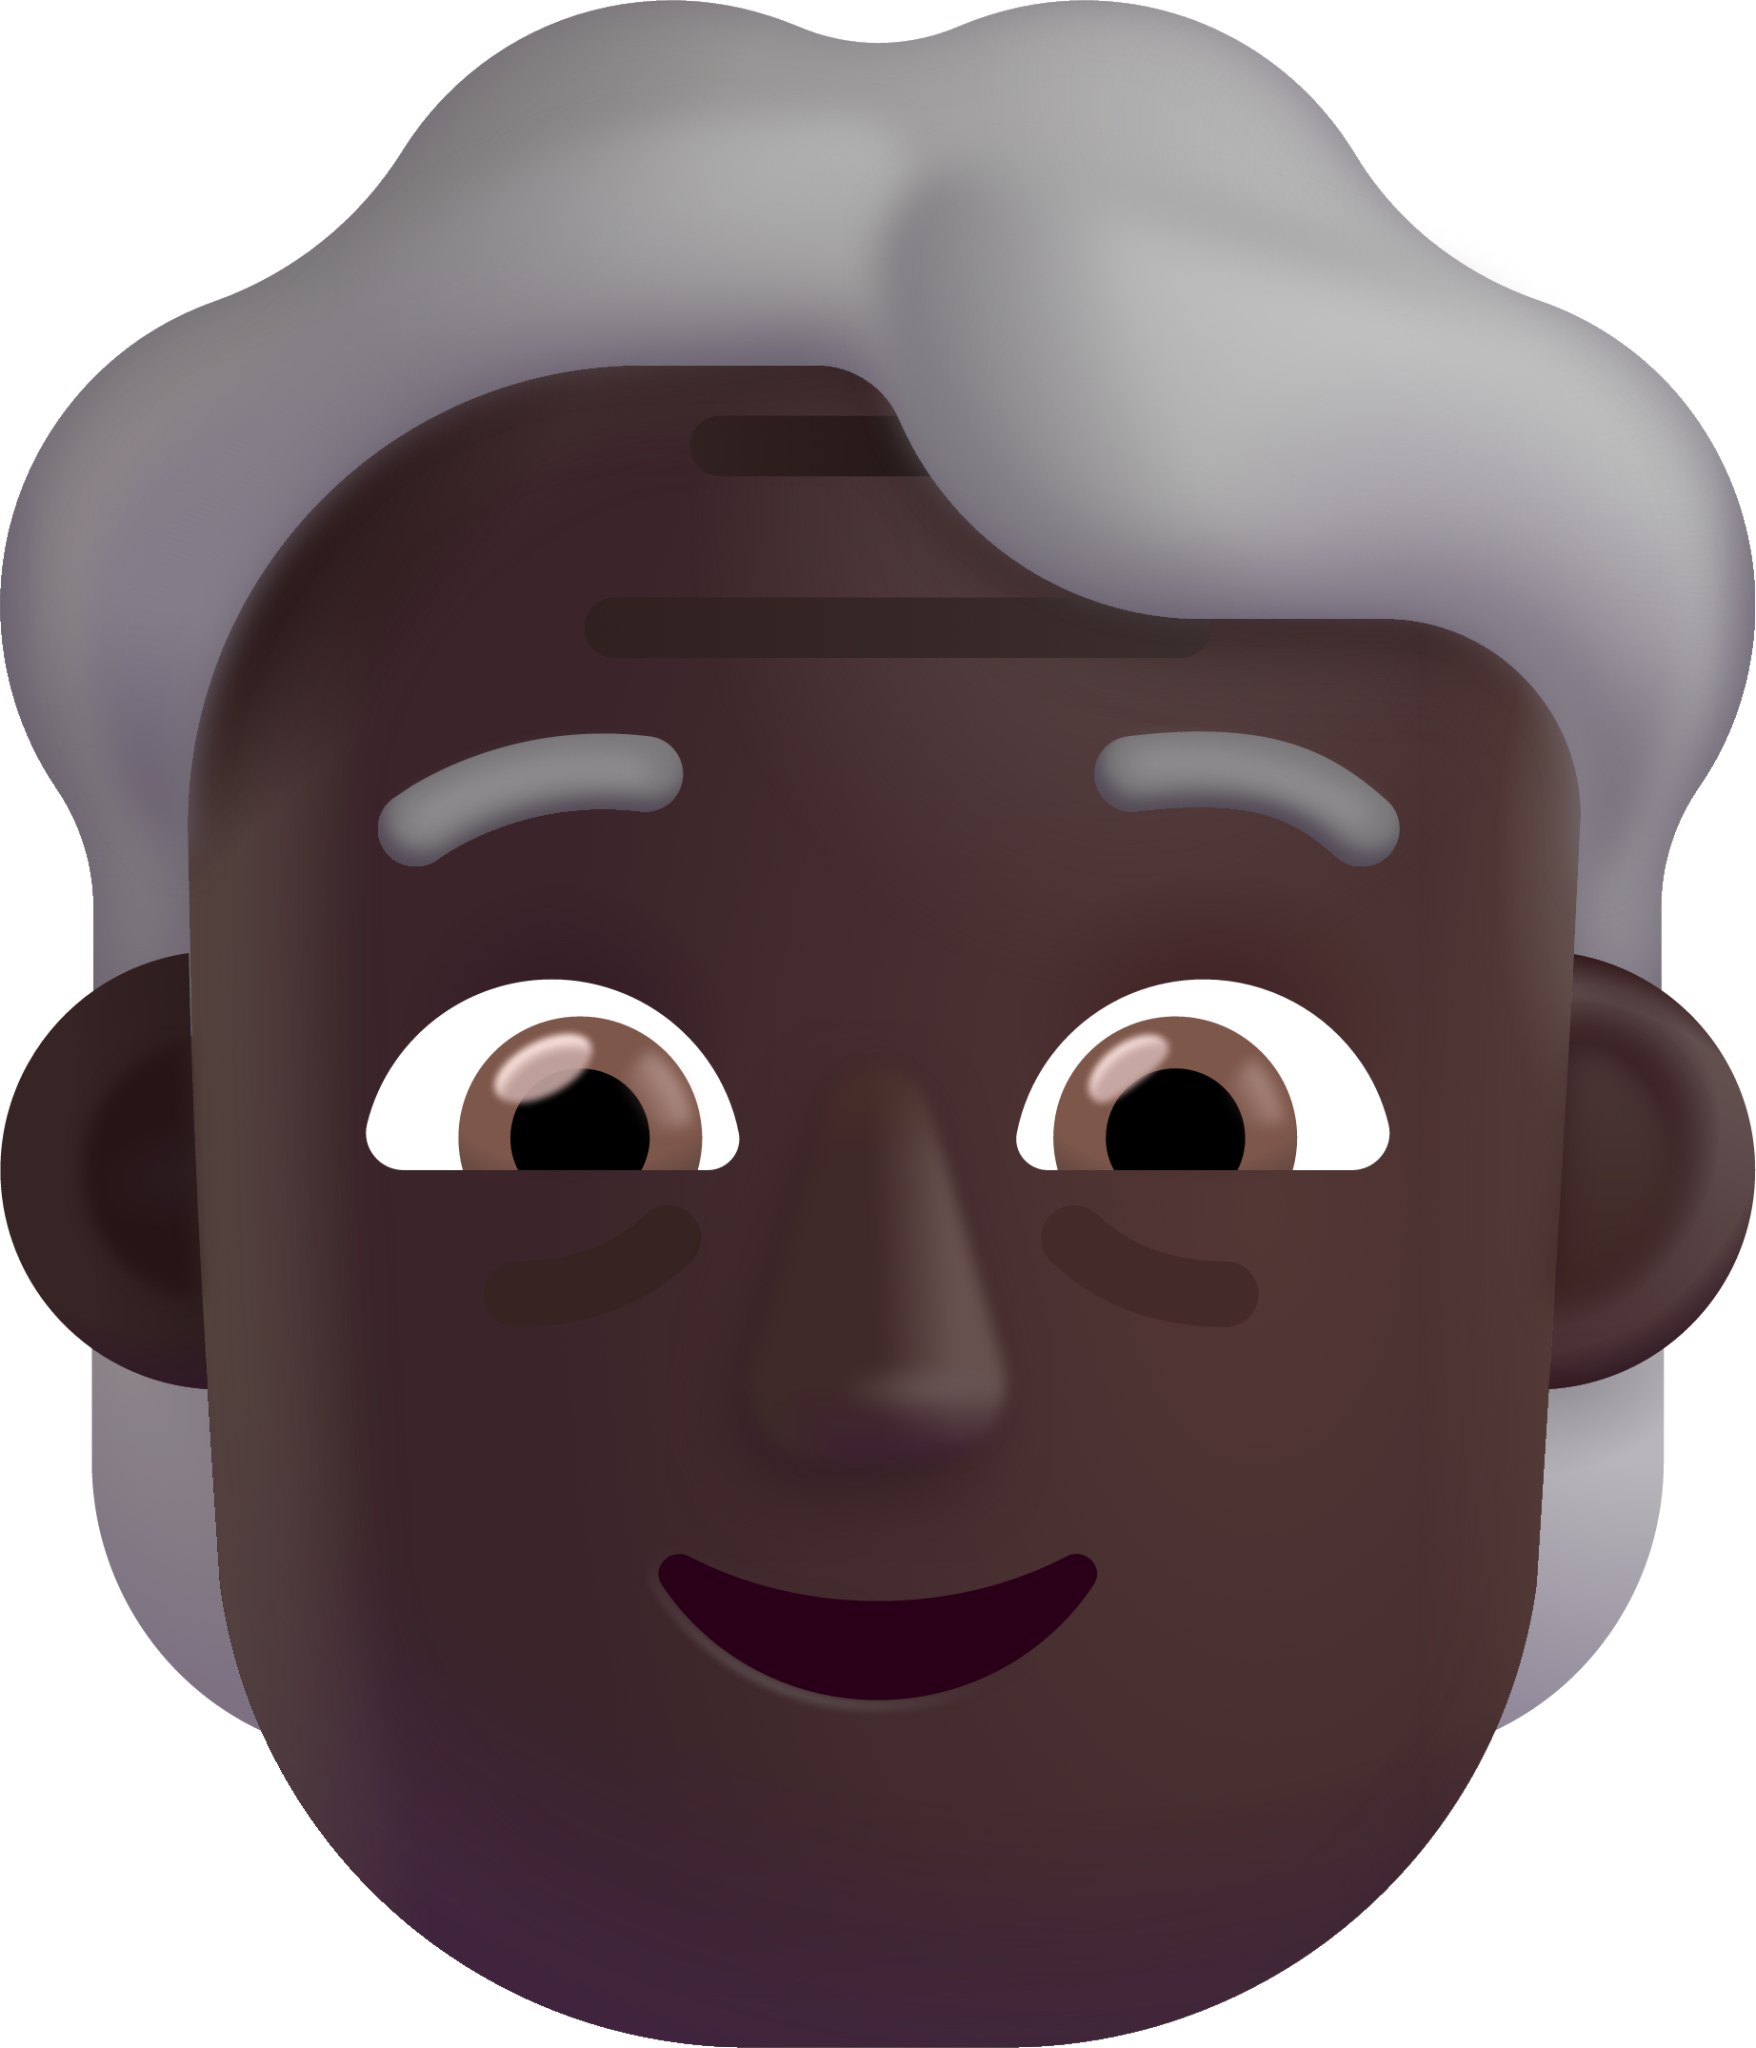 older person dark emoji